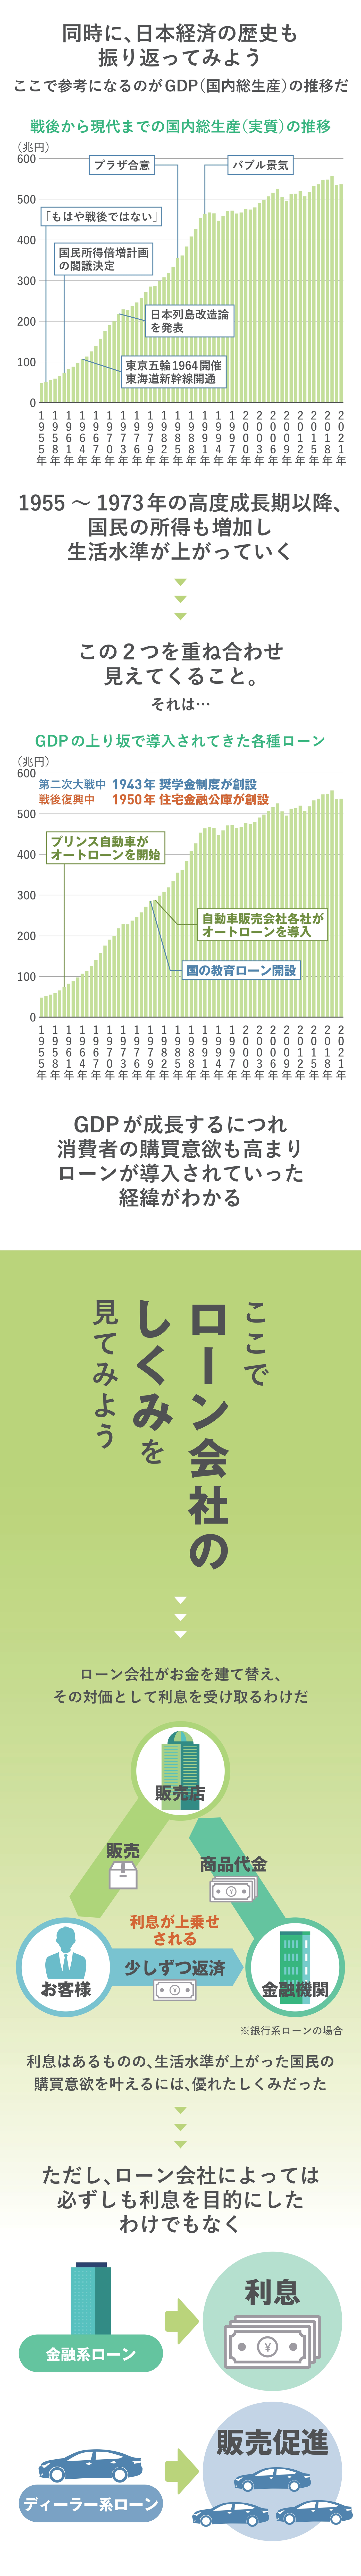 日本経済の歴史とローン会社のしくみ - ロンたす